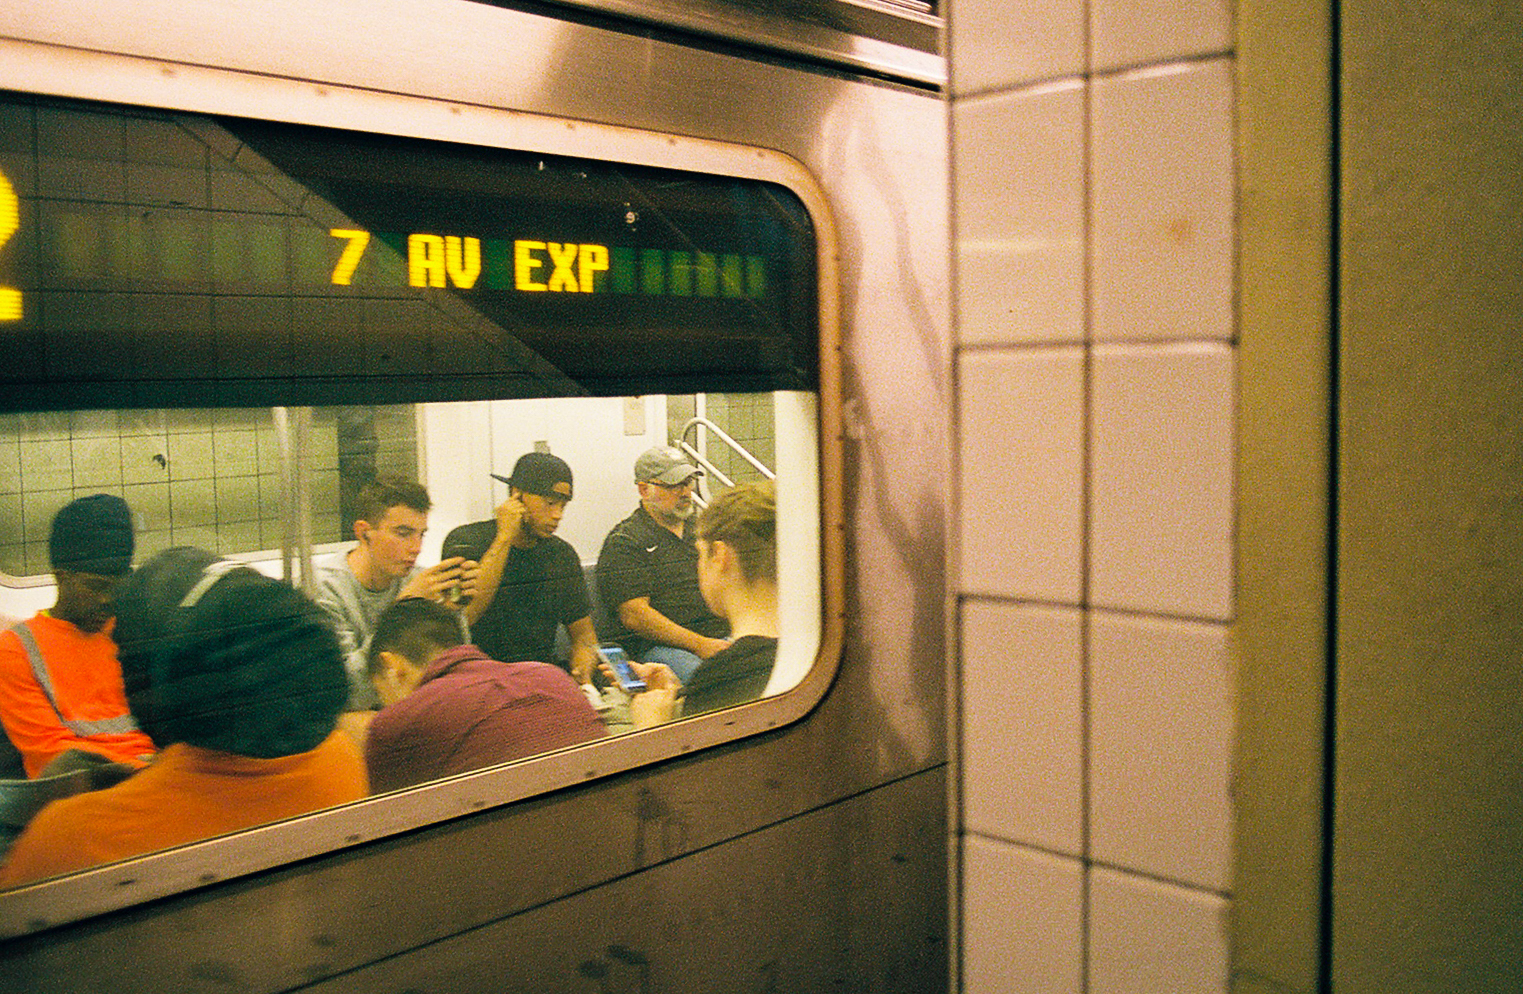 subway.jpg